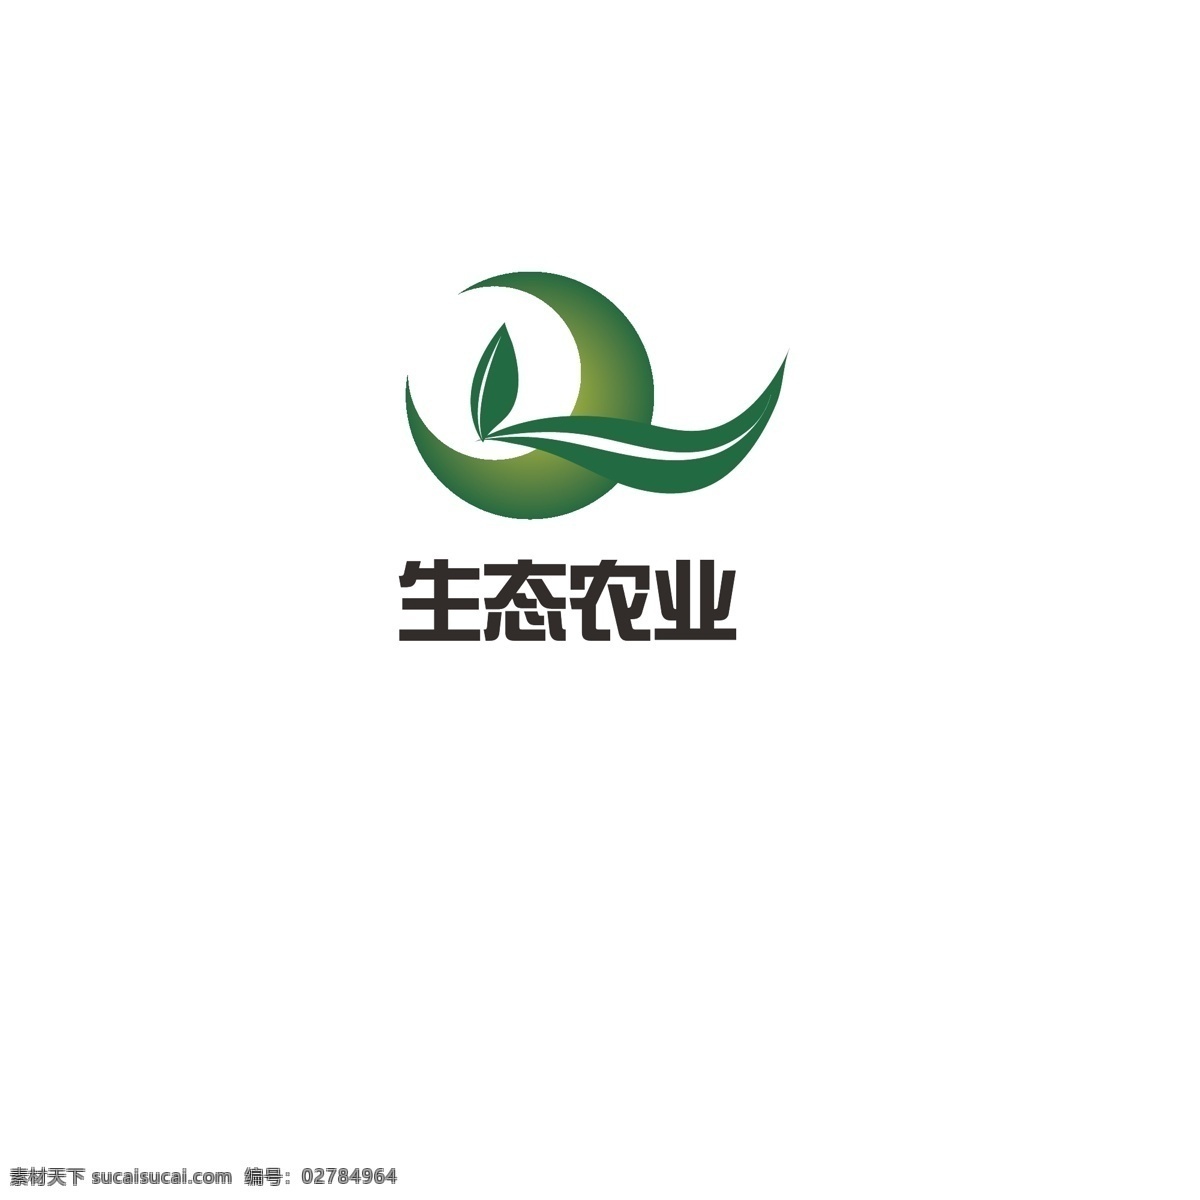 生态农业 logo 农业 绿色 叶子 简约 健康 生态 字母q 发展